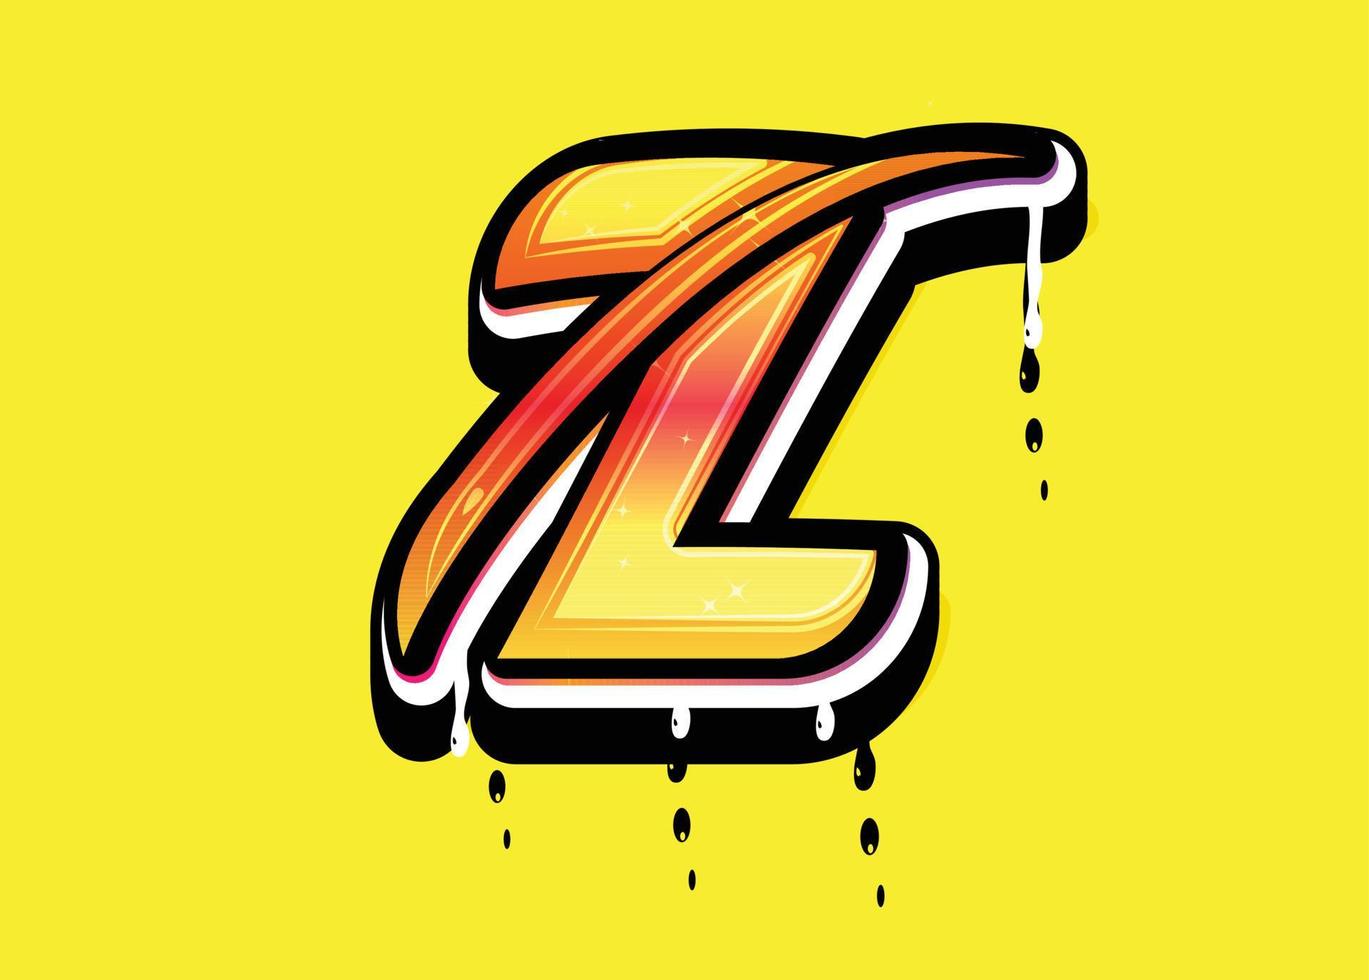 z lettre alphabet swoosh logo vecteur